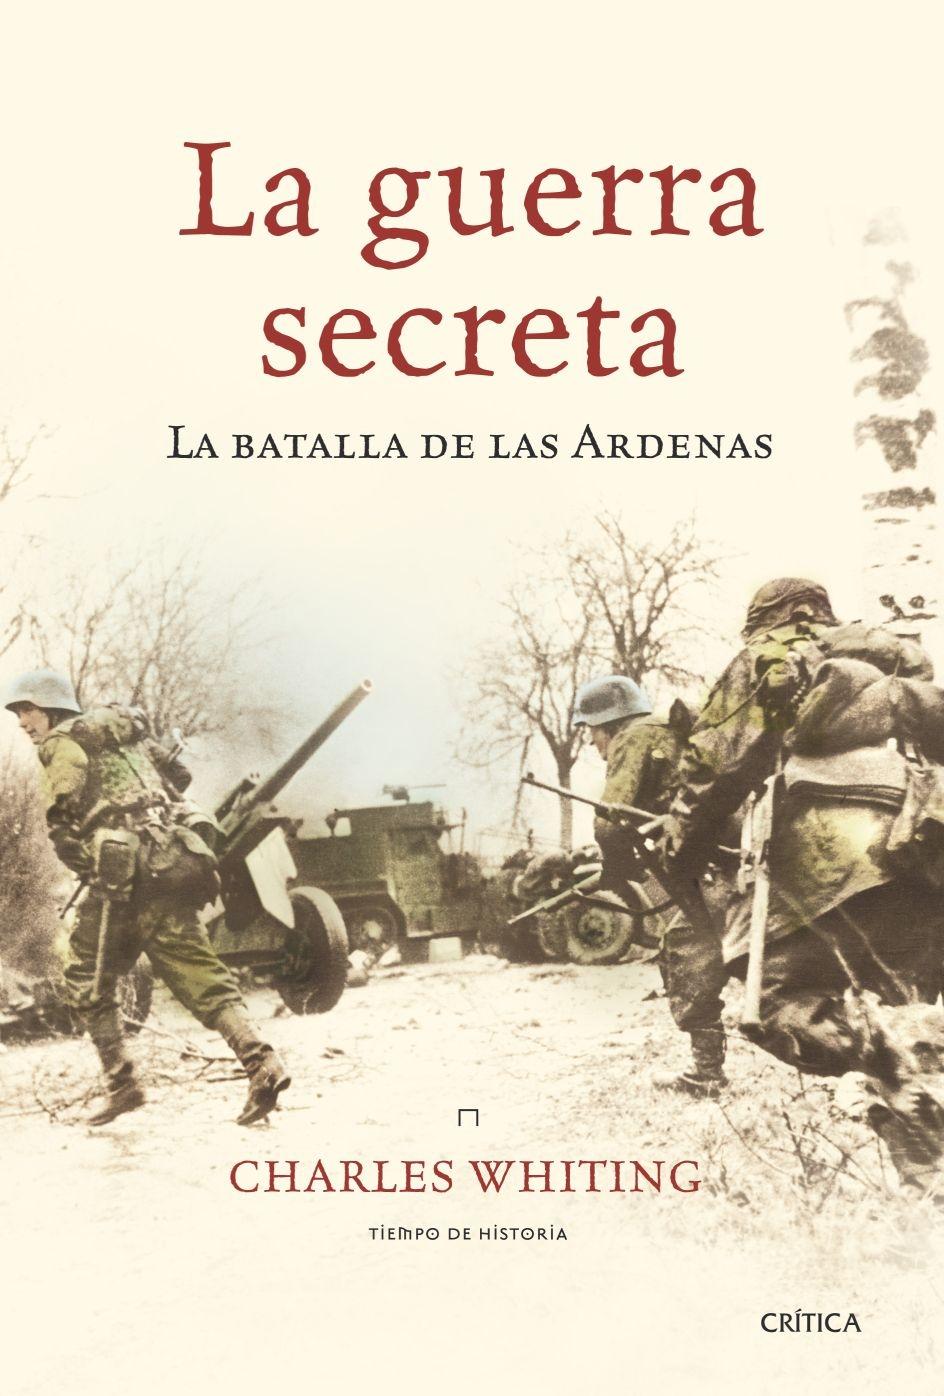 Guerra Secreta, La "La Batalla de las Ardenas"